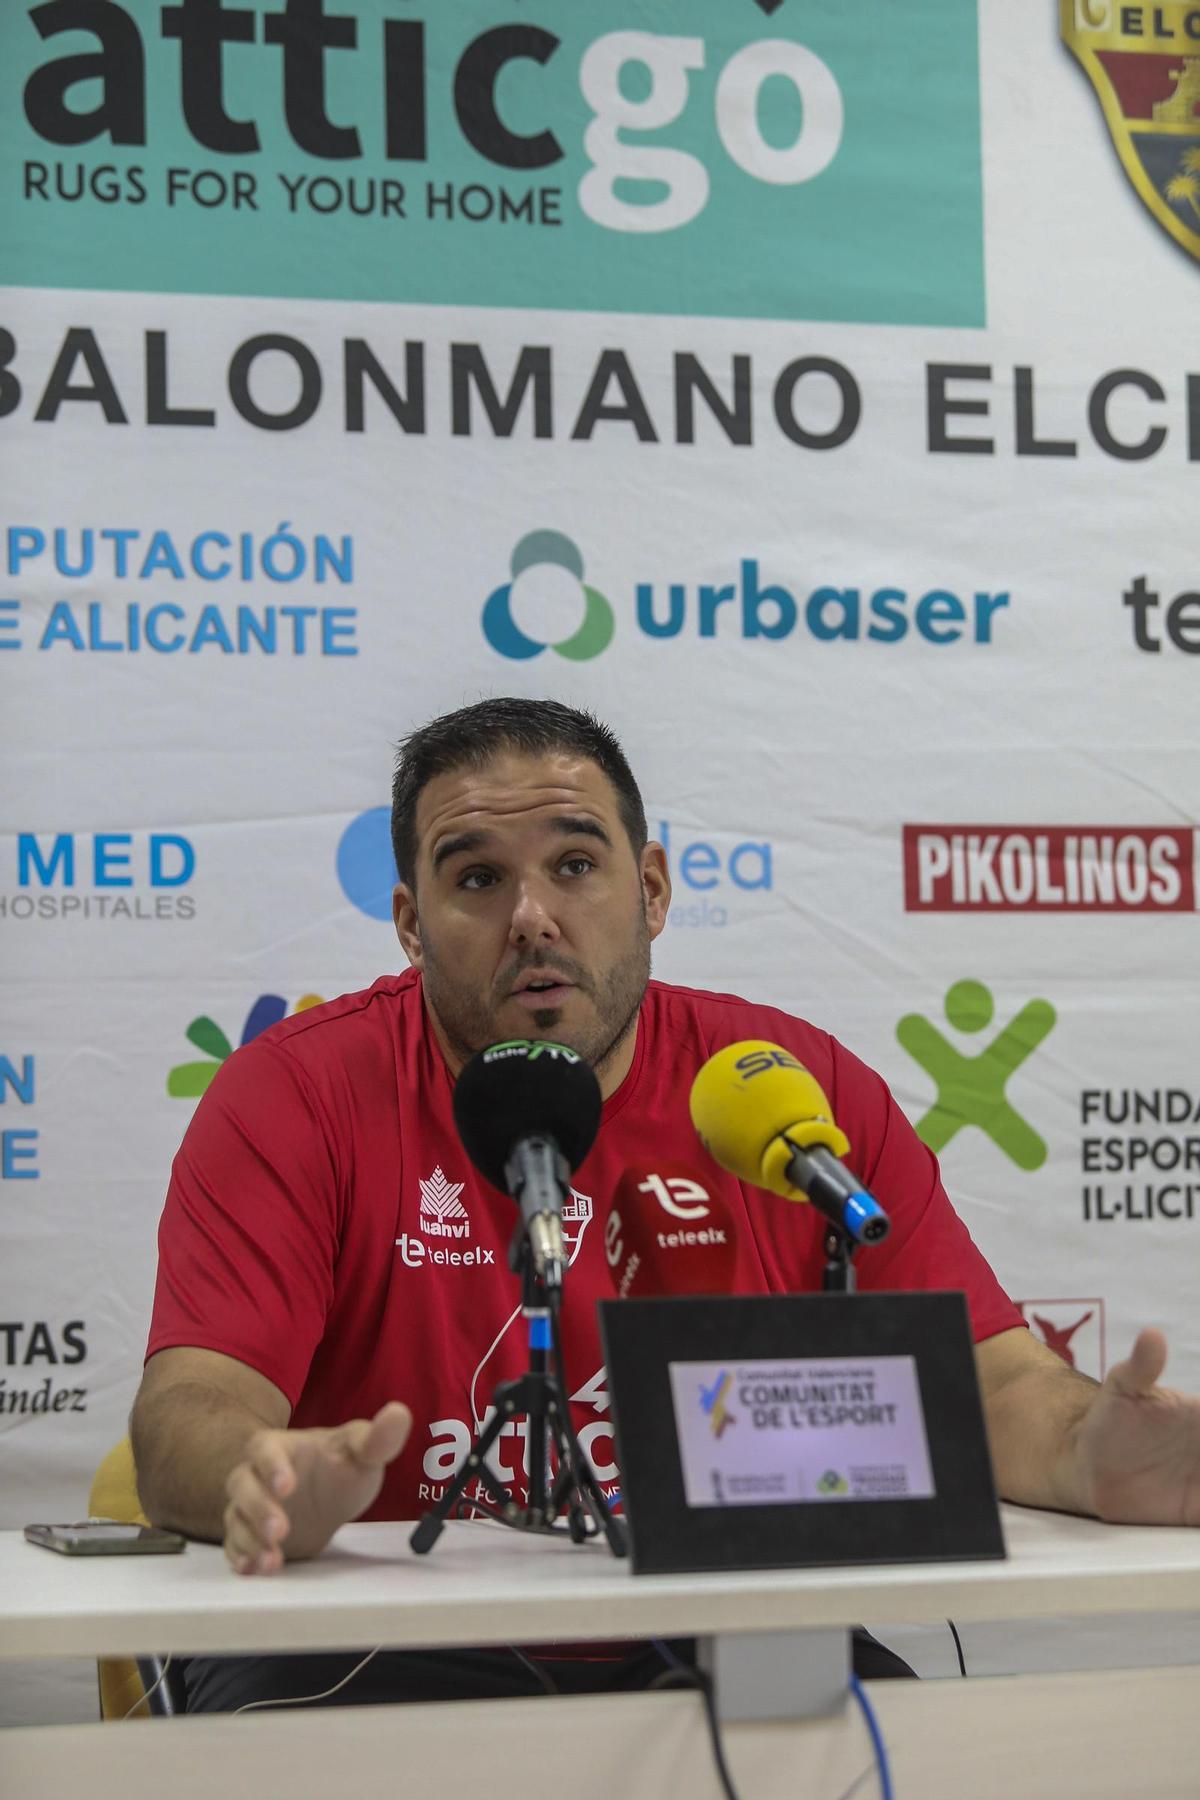 El entrenador del Atticgo Elche, Joaquín Rocamora